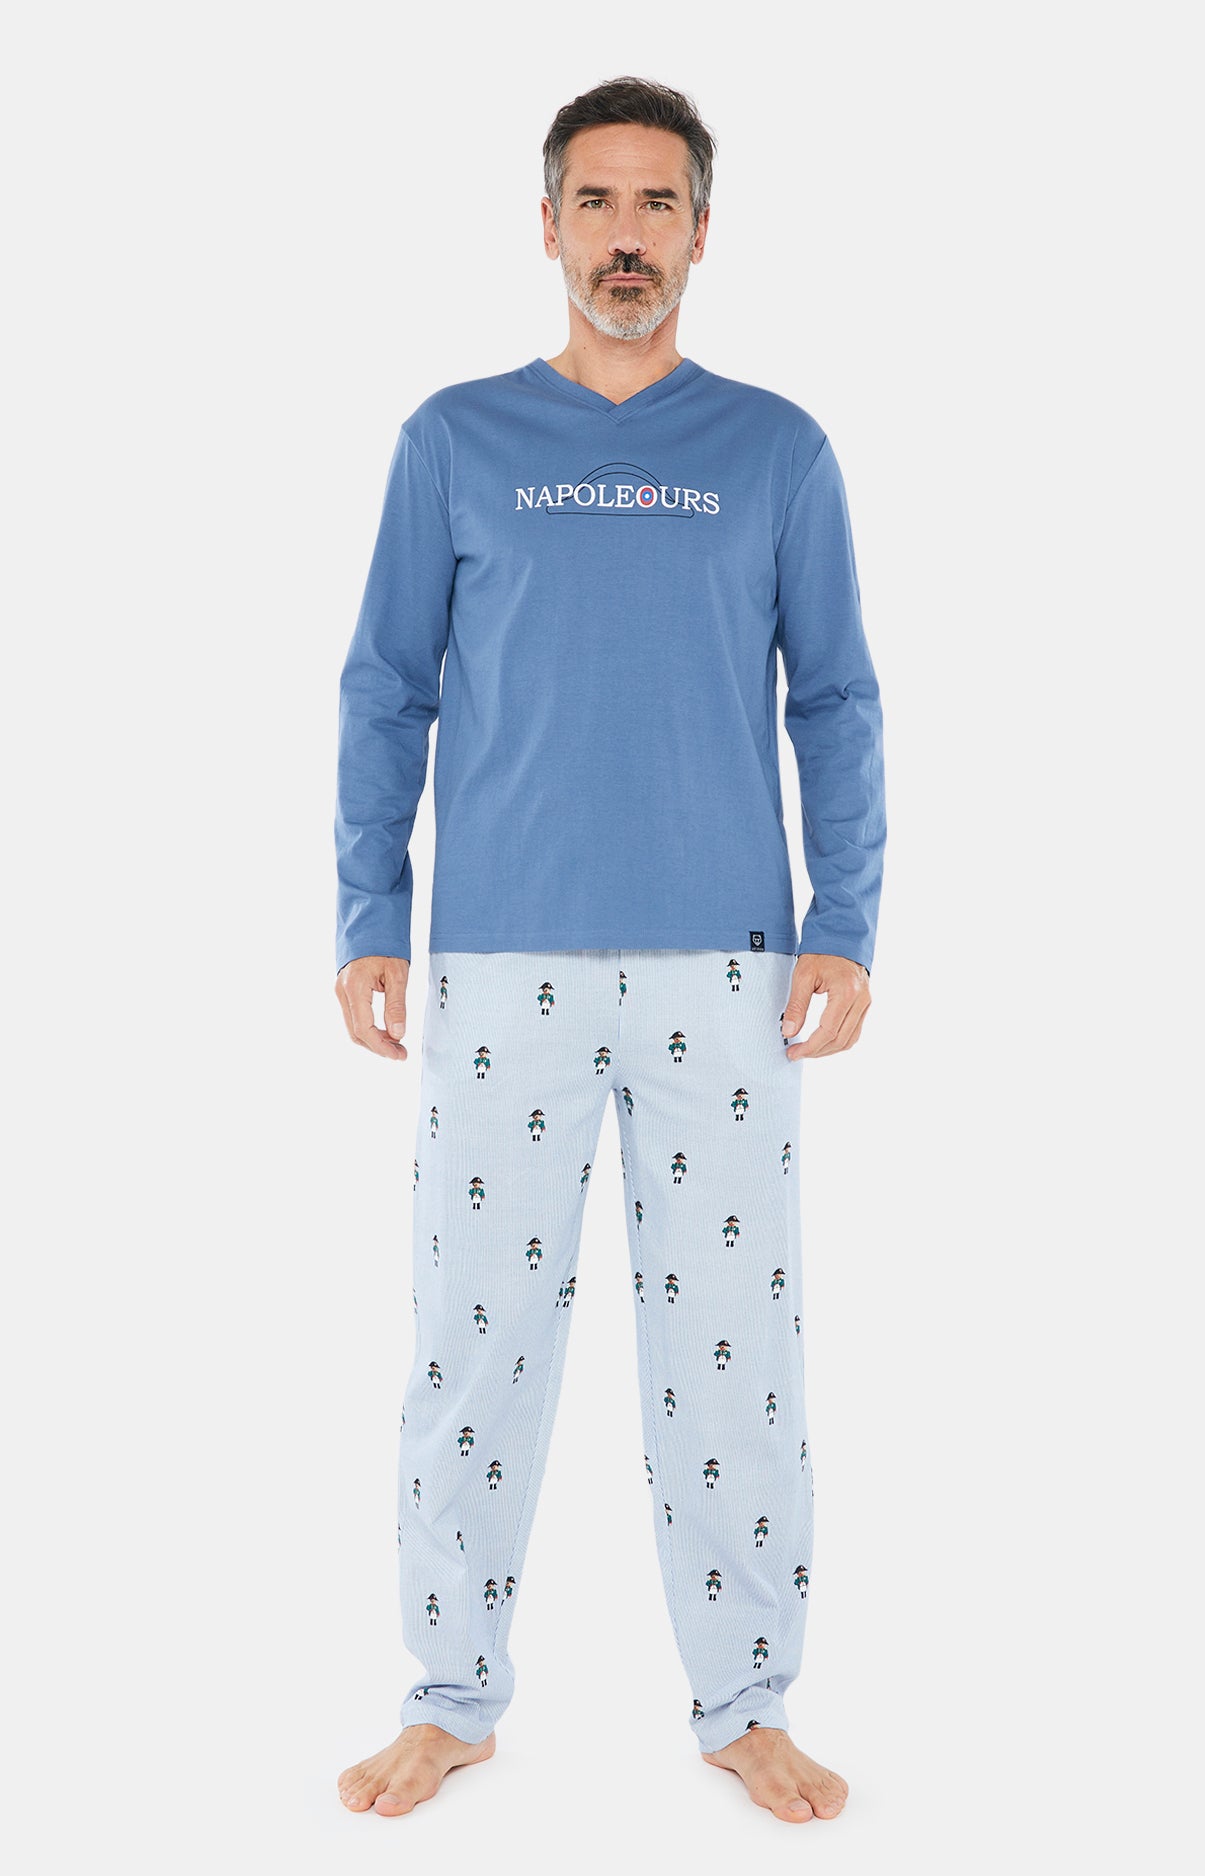 Pyjama Napoleours 2